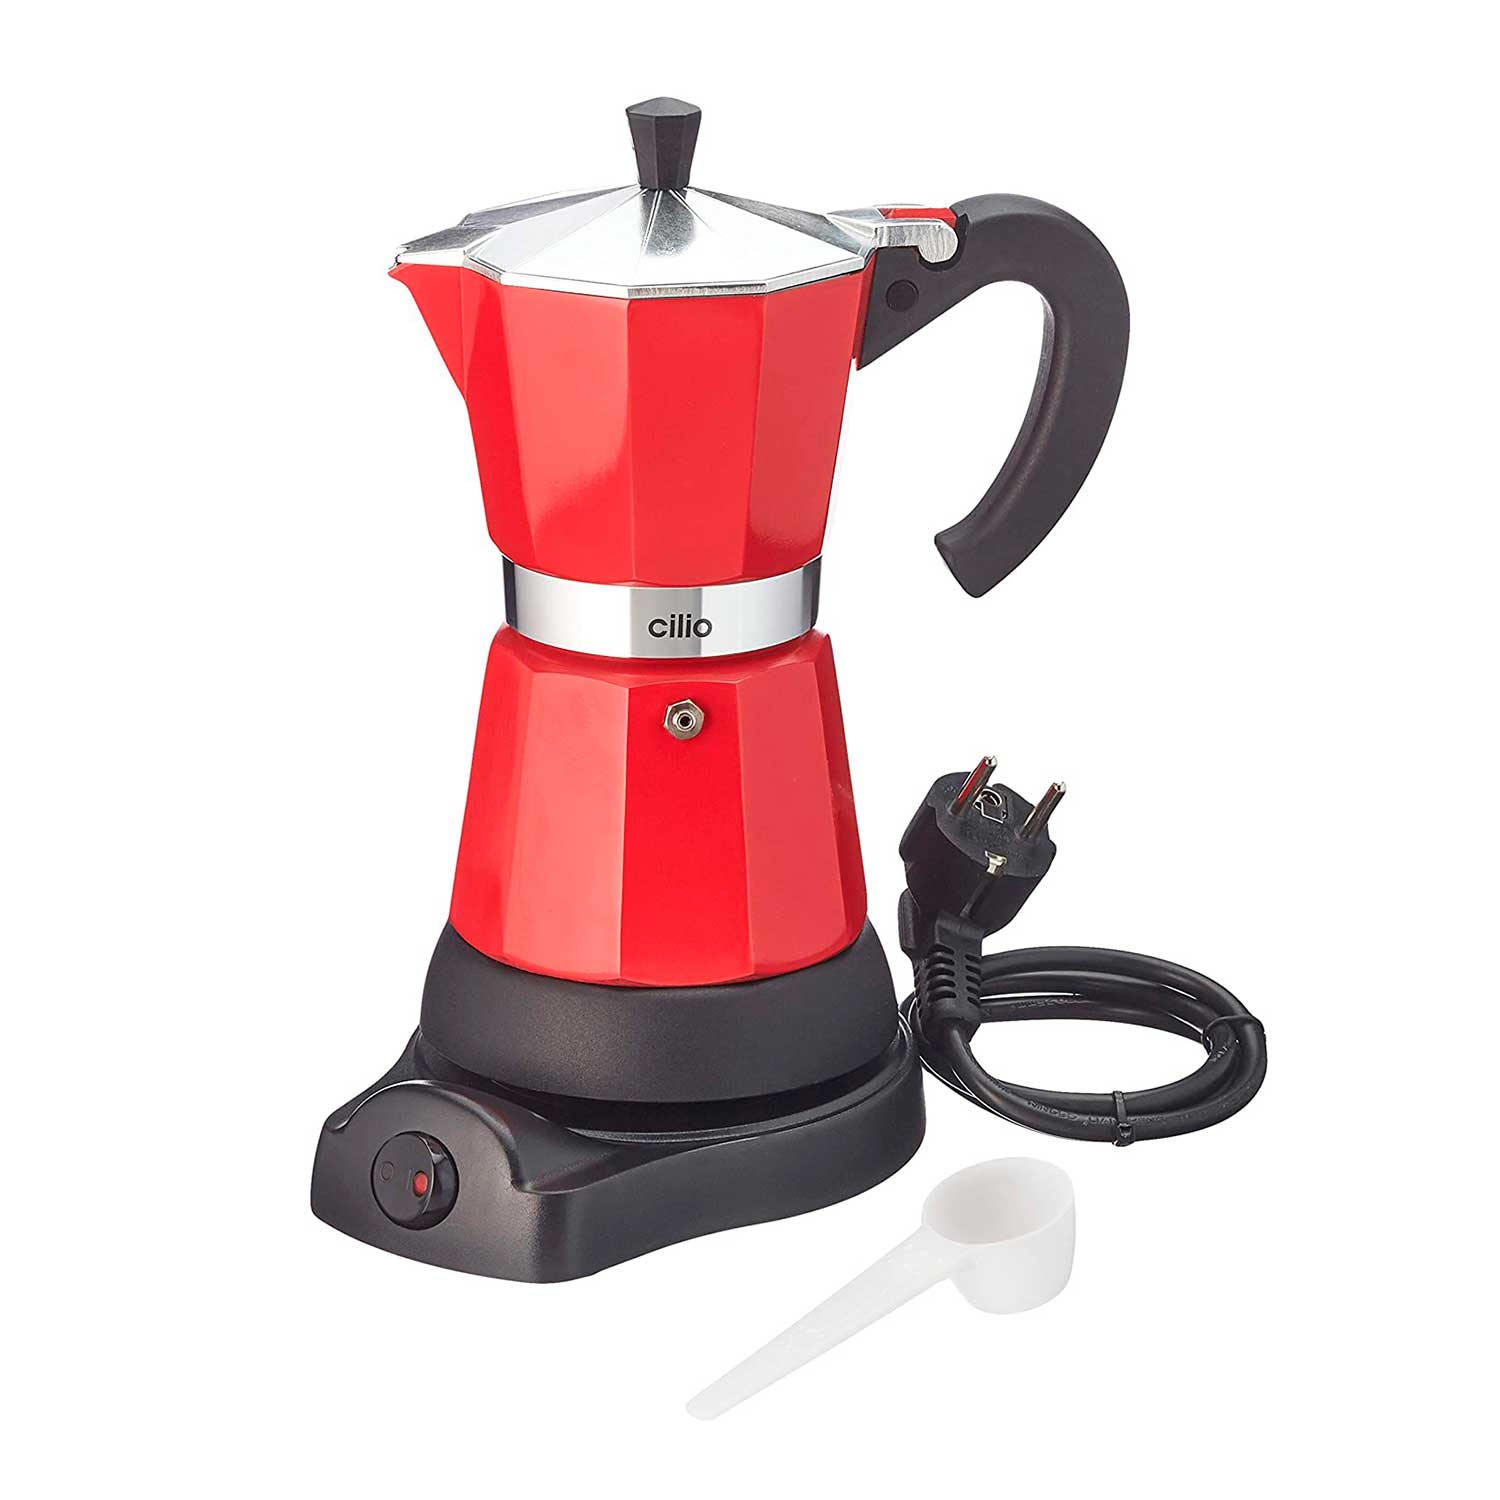 Cafetera eléctrica para 6 tazas, cafetera de café expreso, cafeteras  eléctricas, cafetera italiana, cafetera, cafetera, cafetera, cafetera,  cafetera